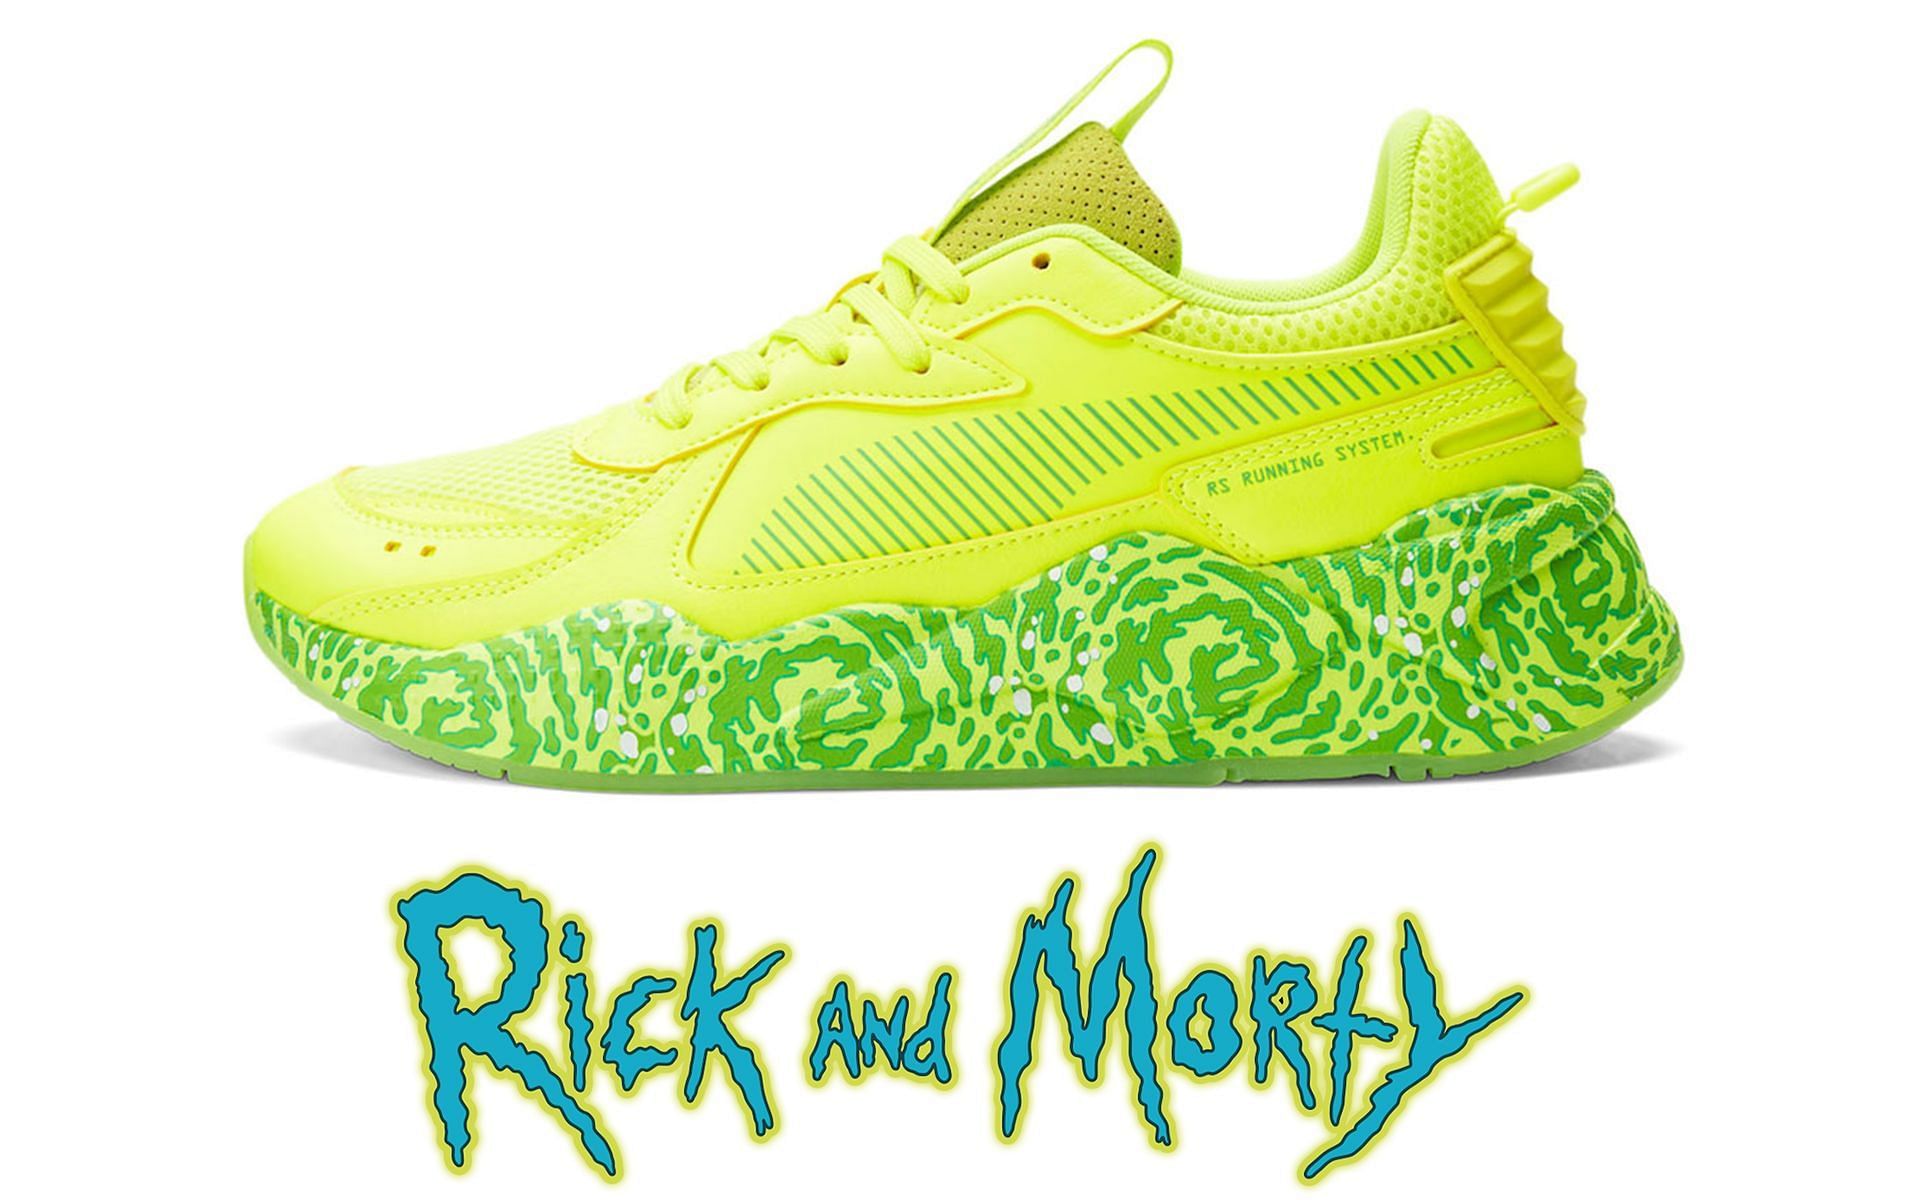 Rick and Morty X PUMA RS-X shoes (Image via Sportskeeda)